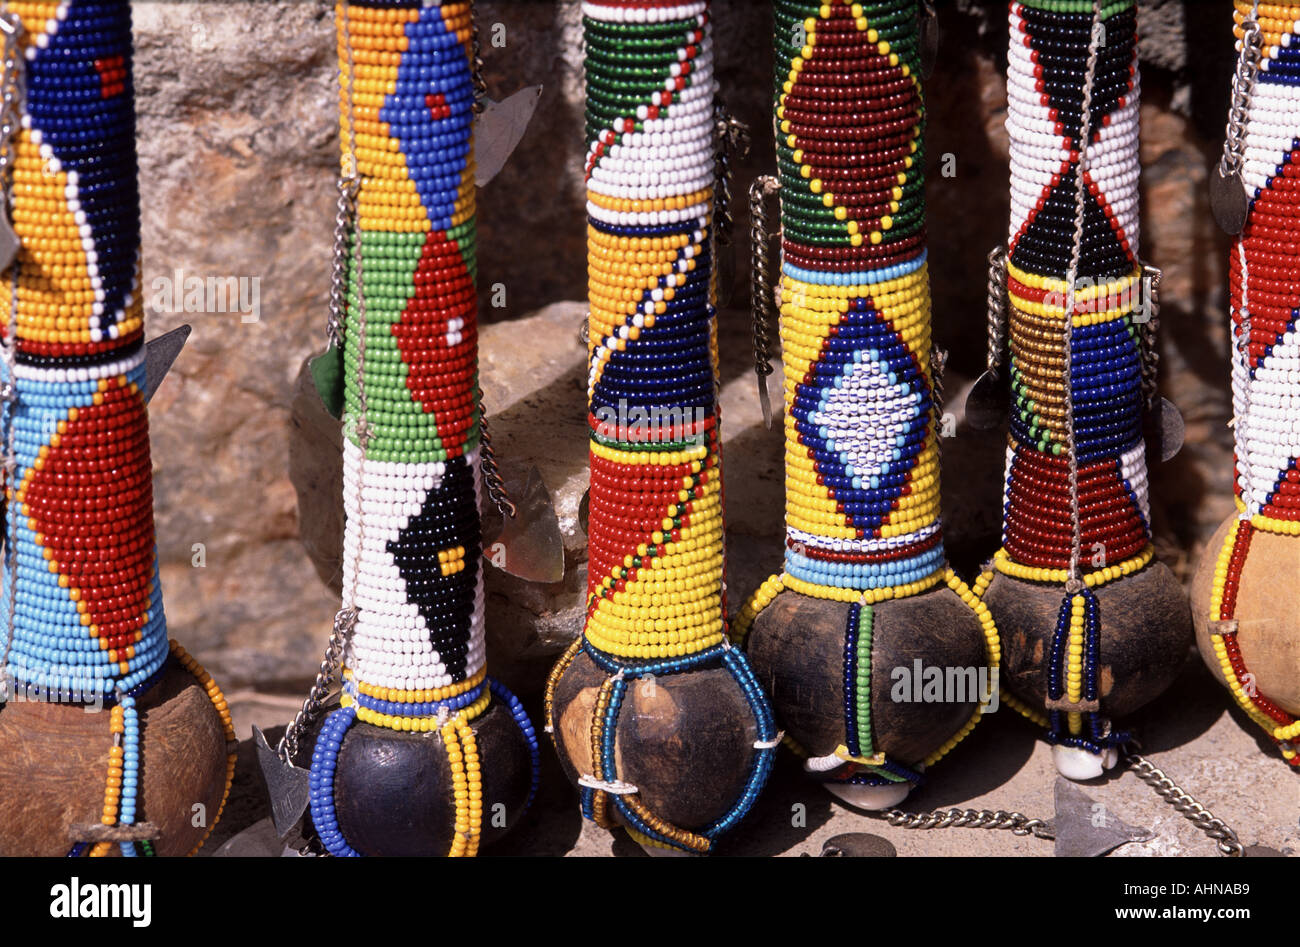 Masai mara fabric design hi-res stock photography and images - Alamy